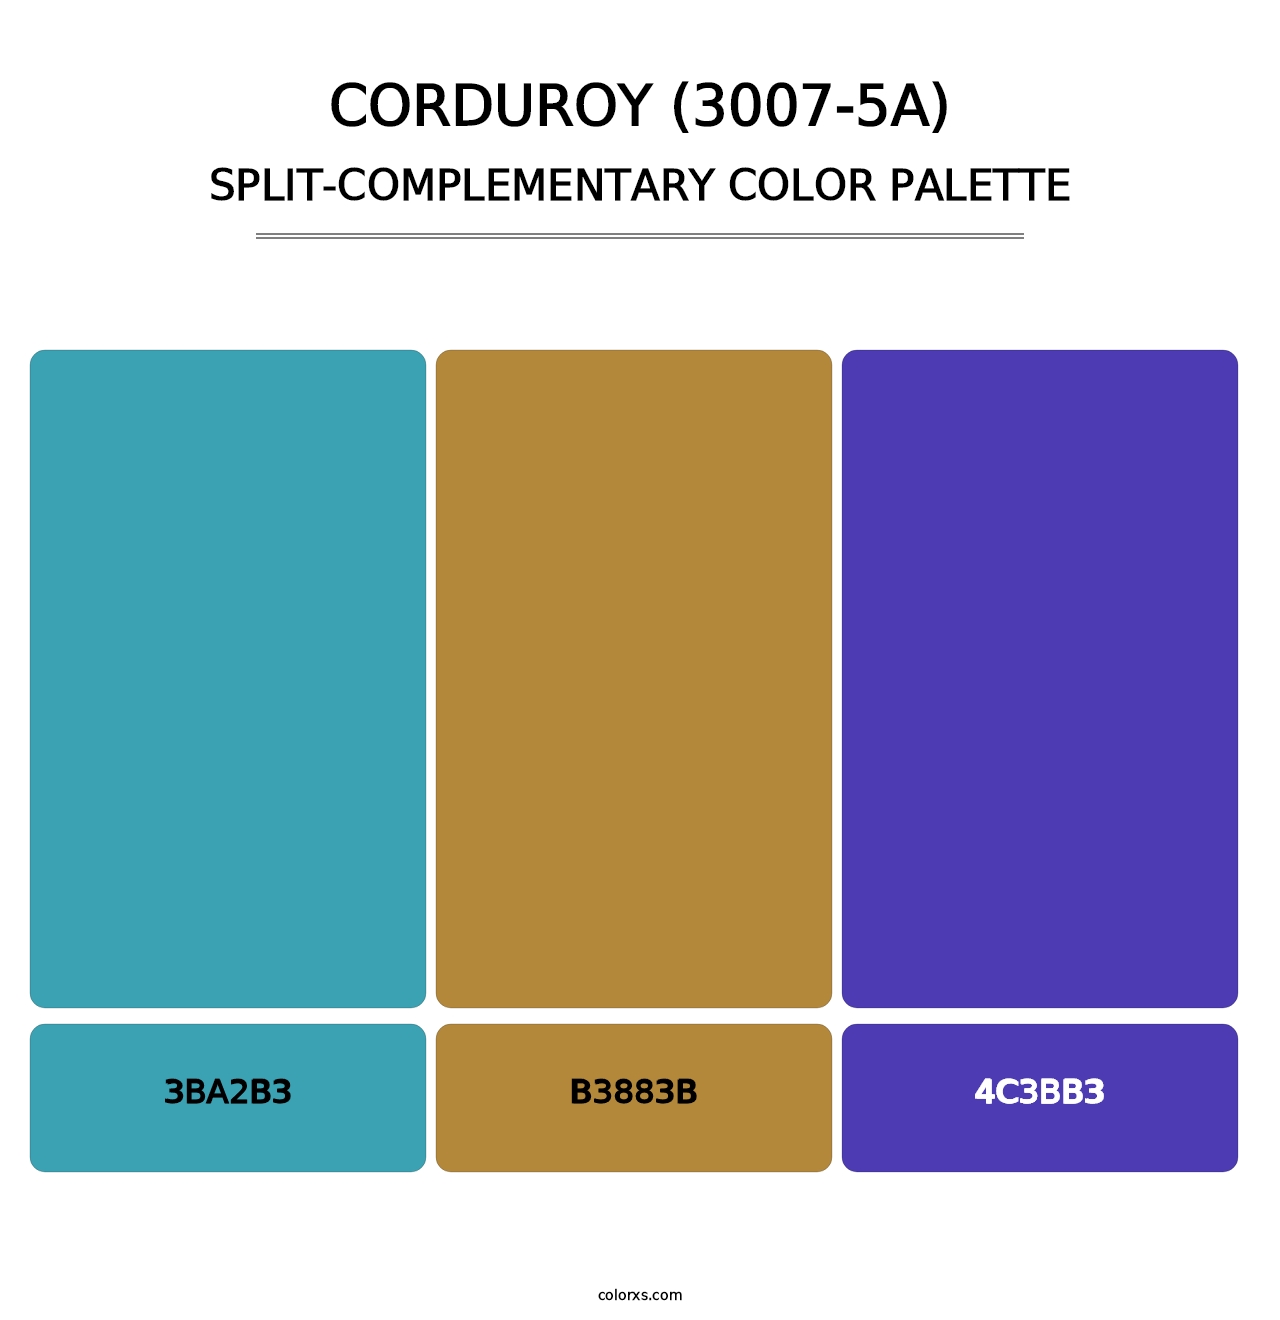 Corduroy (3007-5A) - Split-Complementary Color Palette